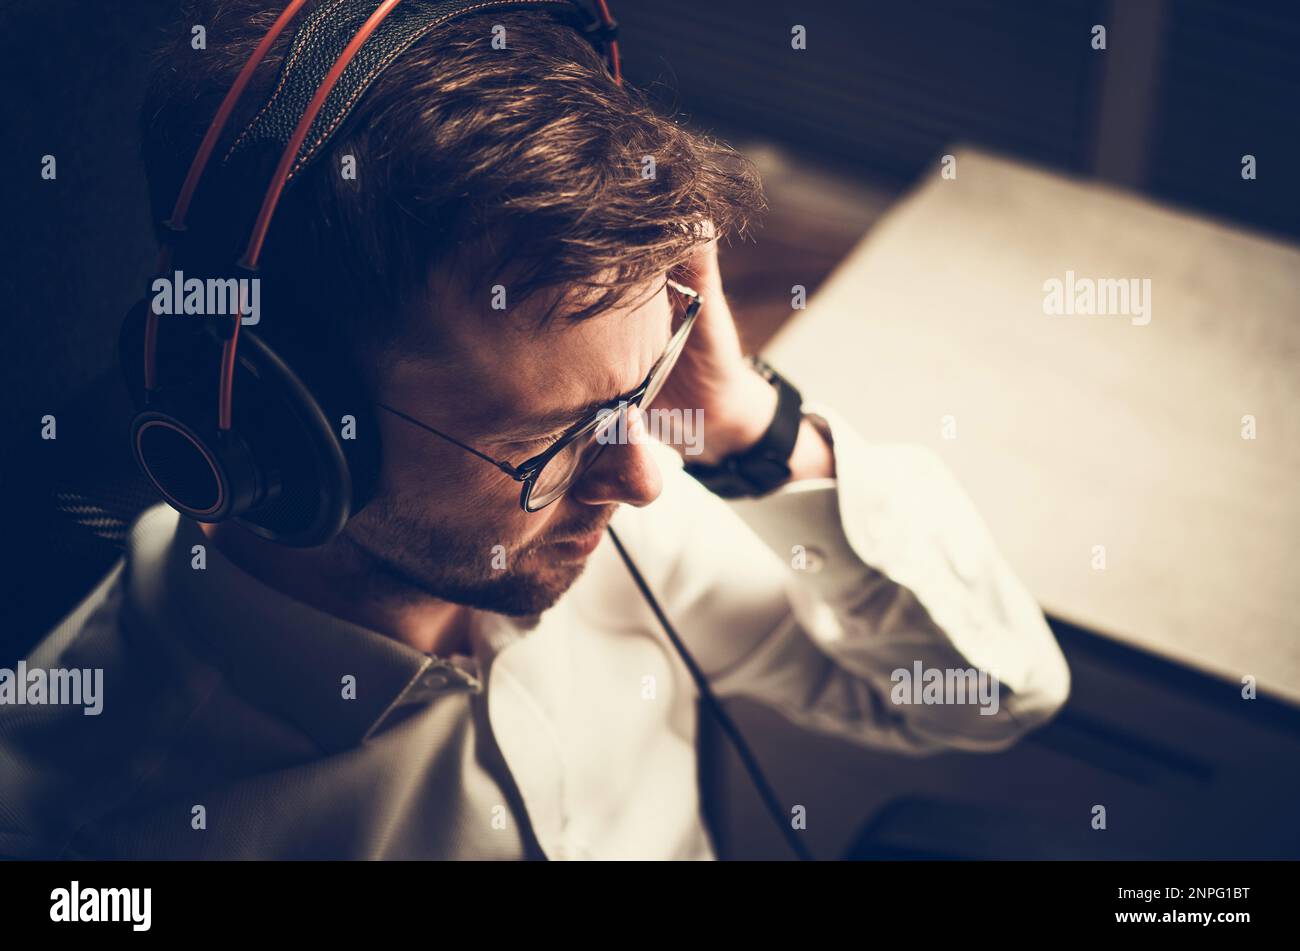 man with headphones wallpaper